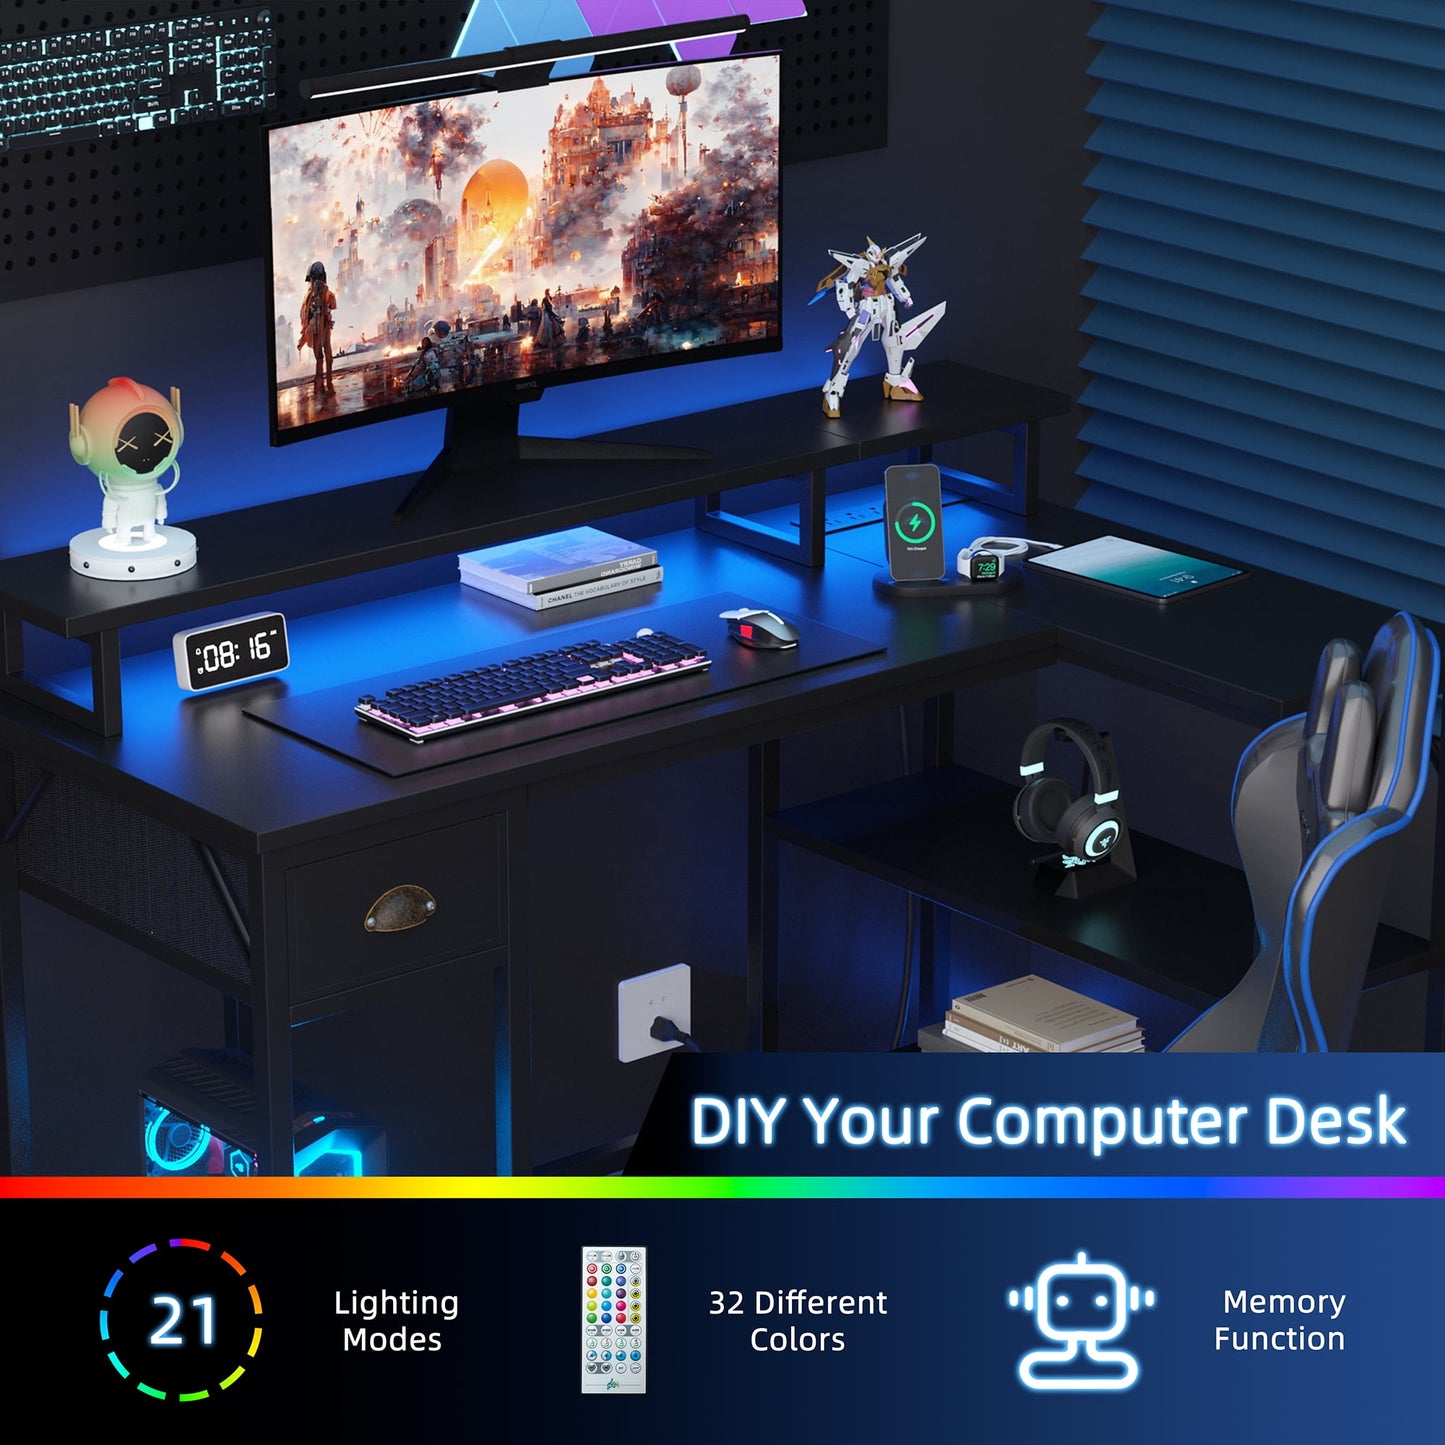 Walsunny L Shaped 55 inch Home Office Desks, Writing Gaming Desk Large Work Desk Study Workstation, Laptop Stand for Desk Grey